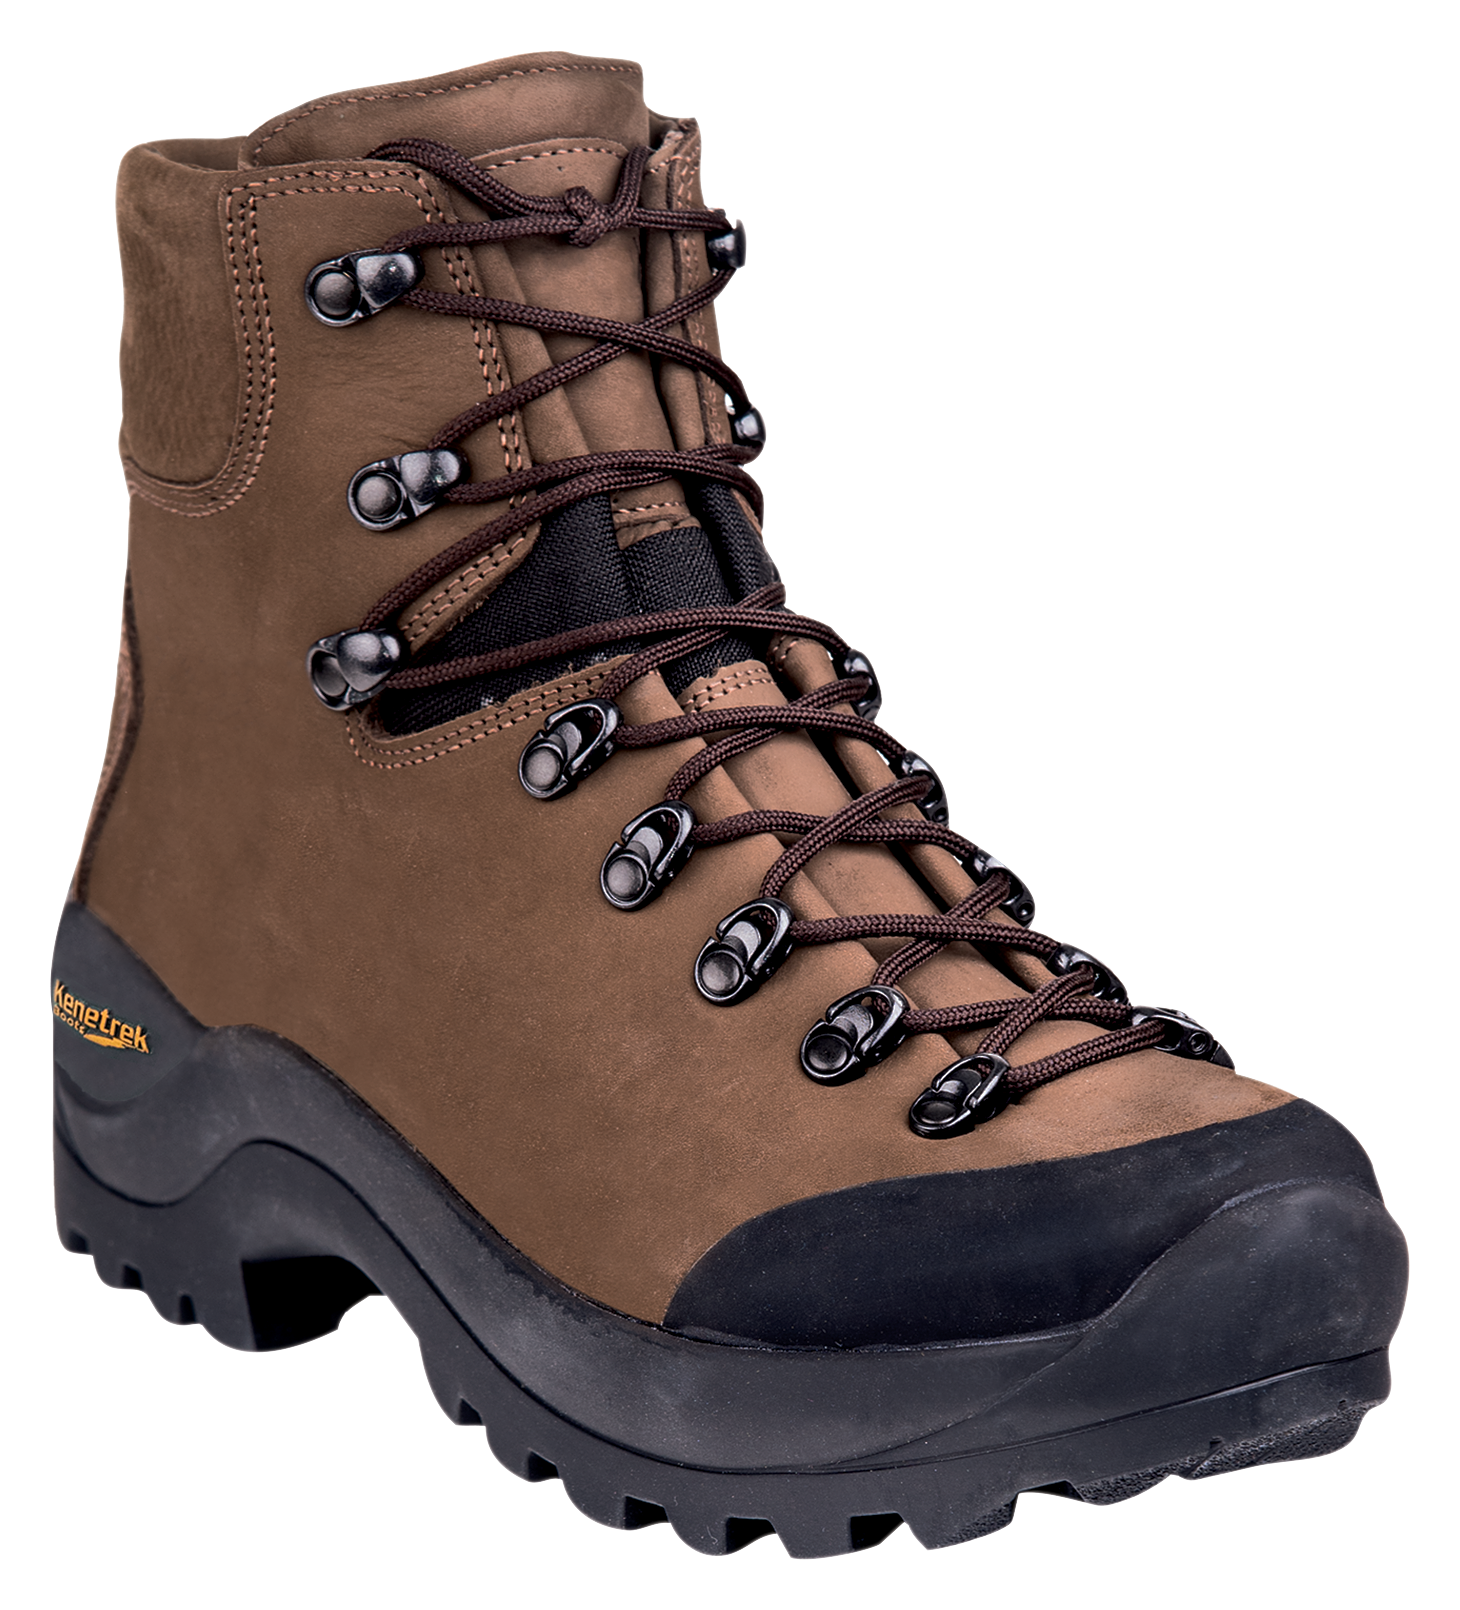 Kenetrek Desert Guide Hunting Boots for Men - Brown - 10.5W